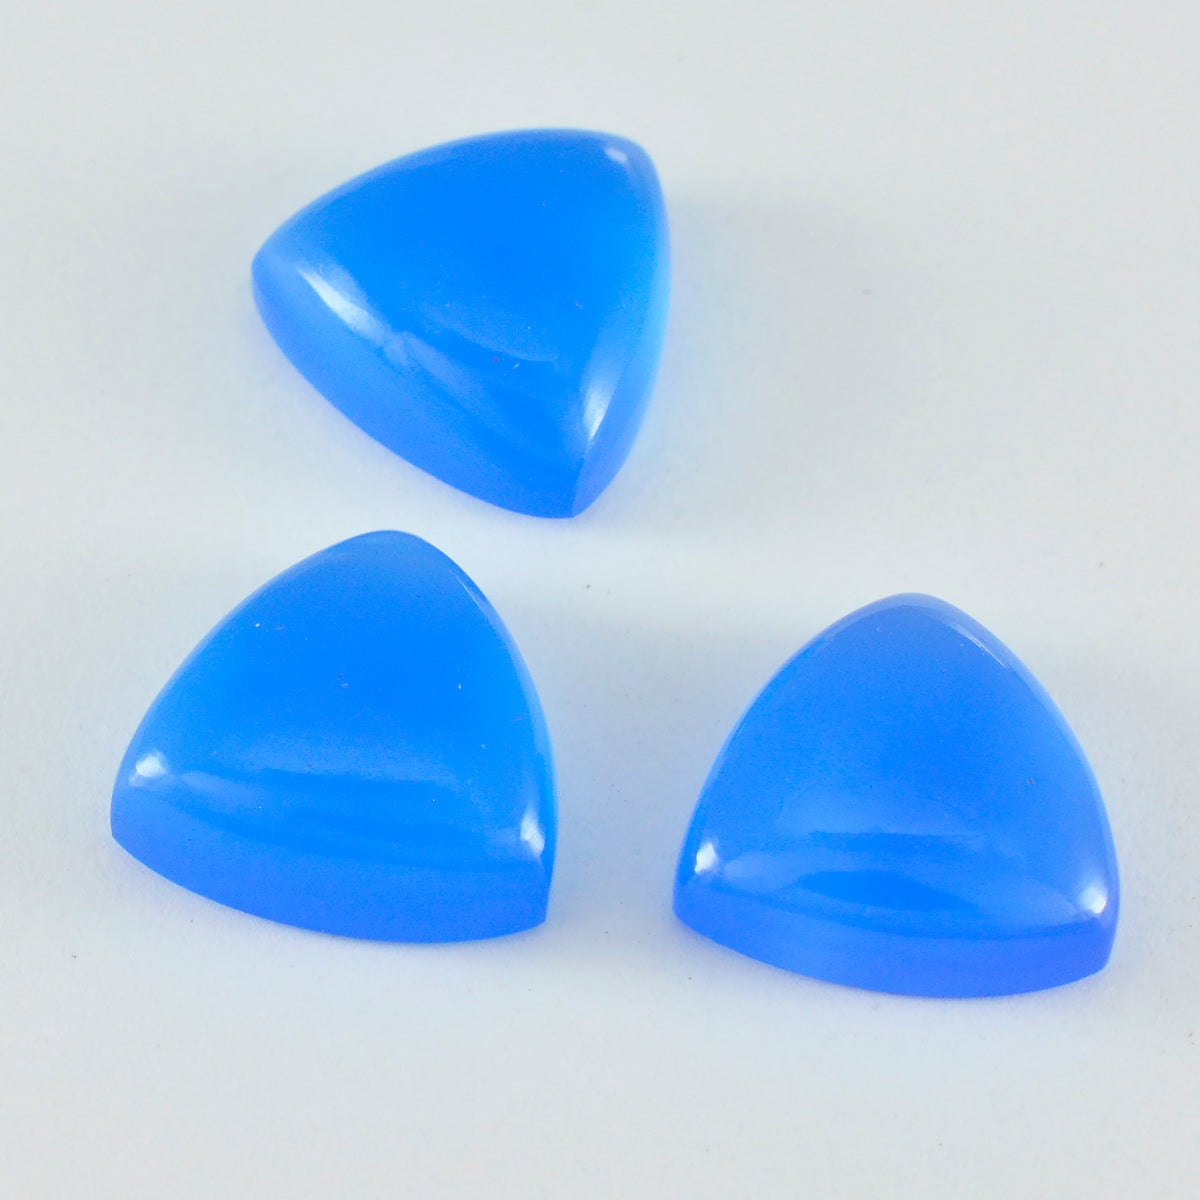 Riyogems 1 Stück blauer Chalcedon-Cabochon, 11 x 11 mm, Trillion-Form, Edelsteine in AA-Qualität